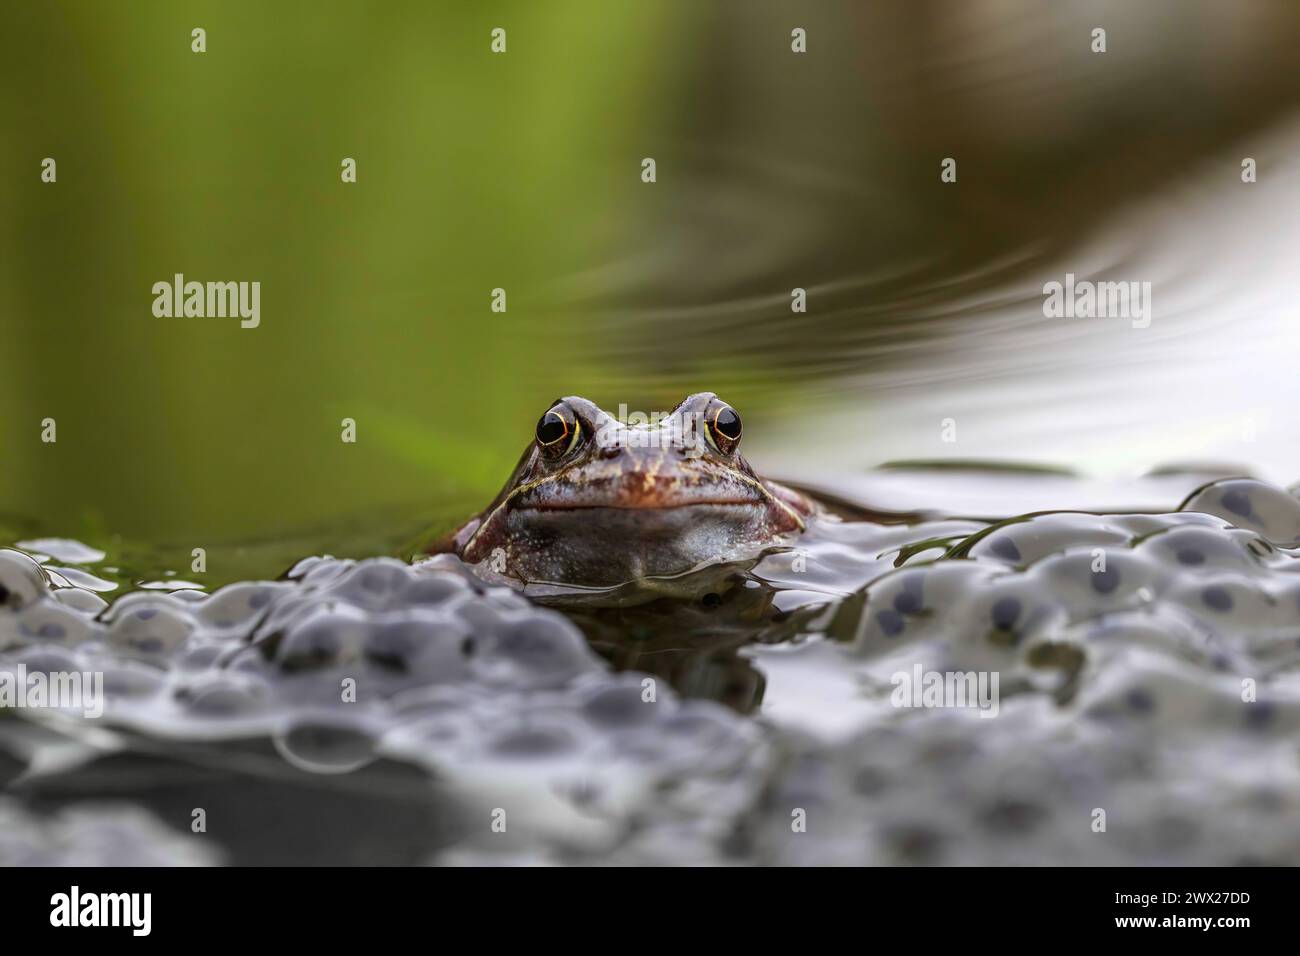 A Common Frog - Rana temporaria in a garden pond with frogspaen Stock Photo